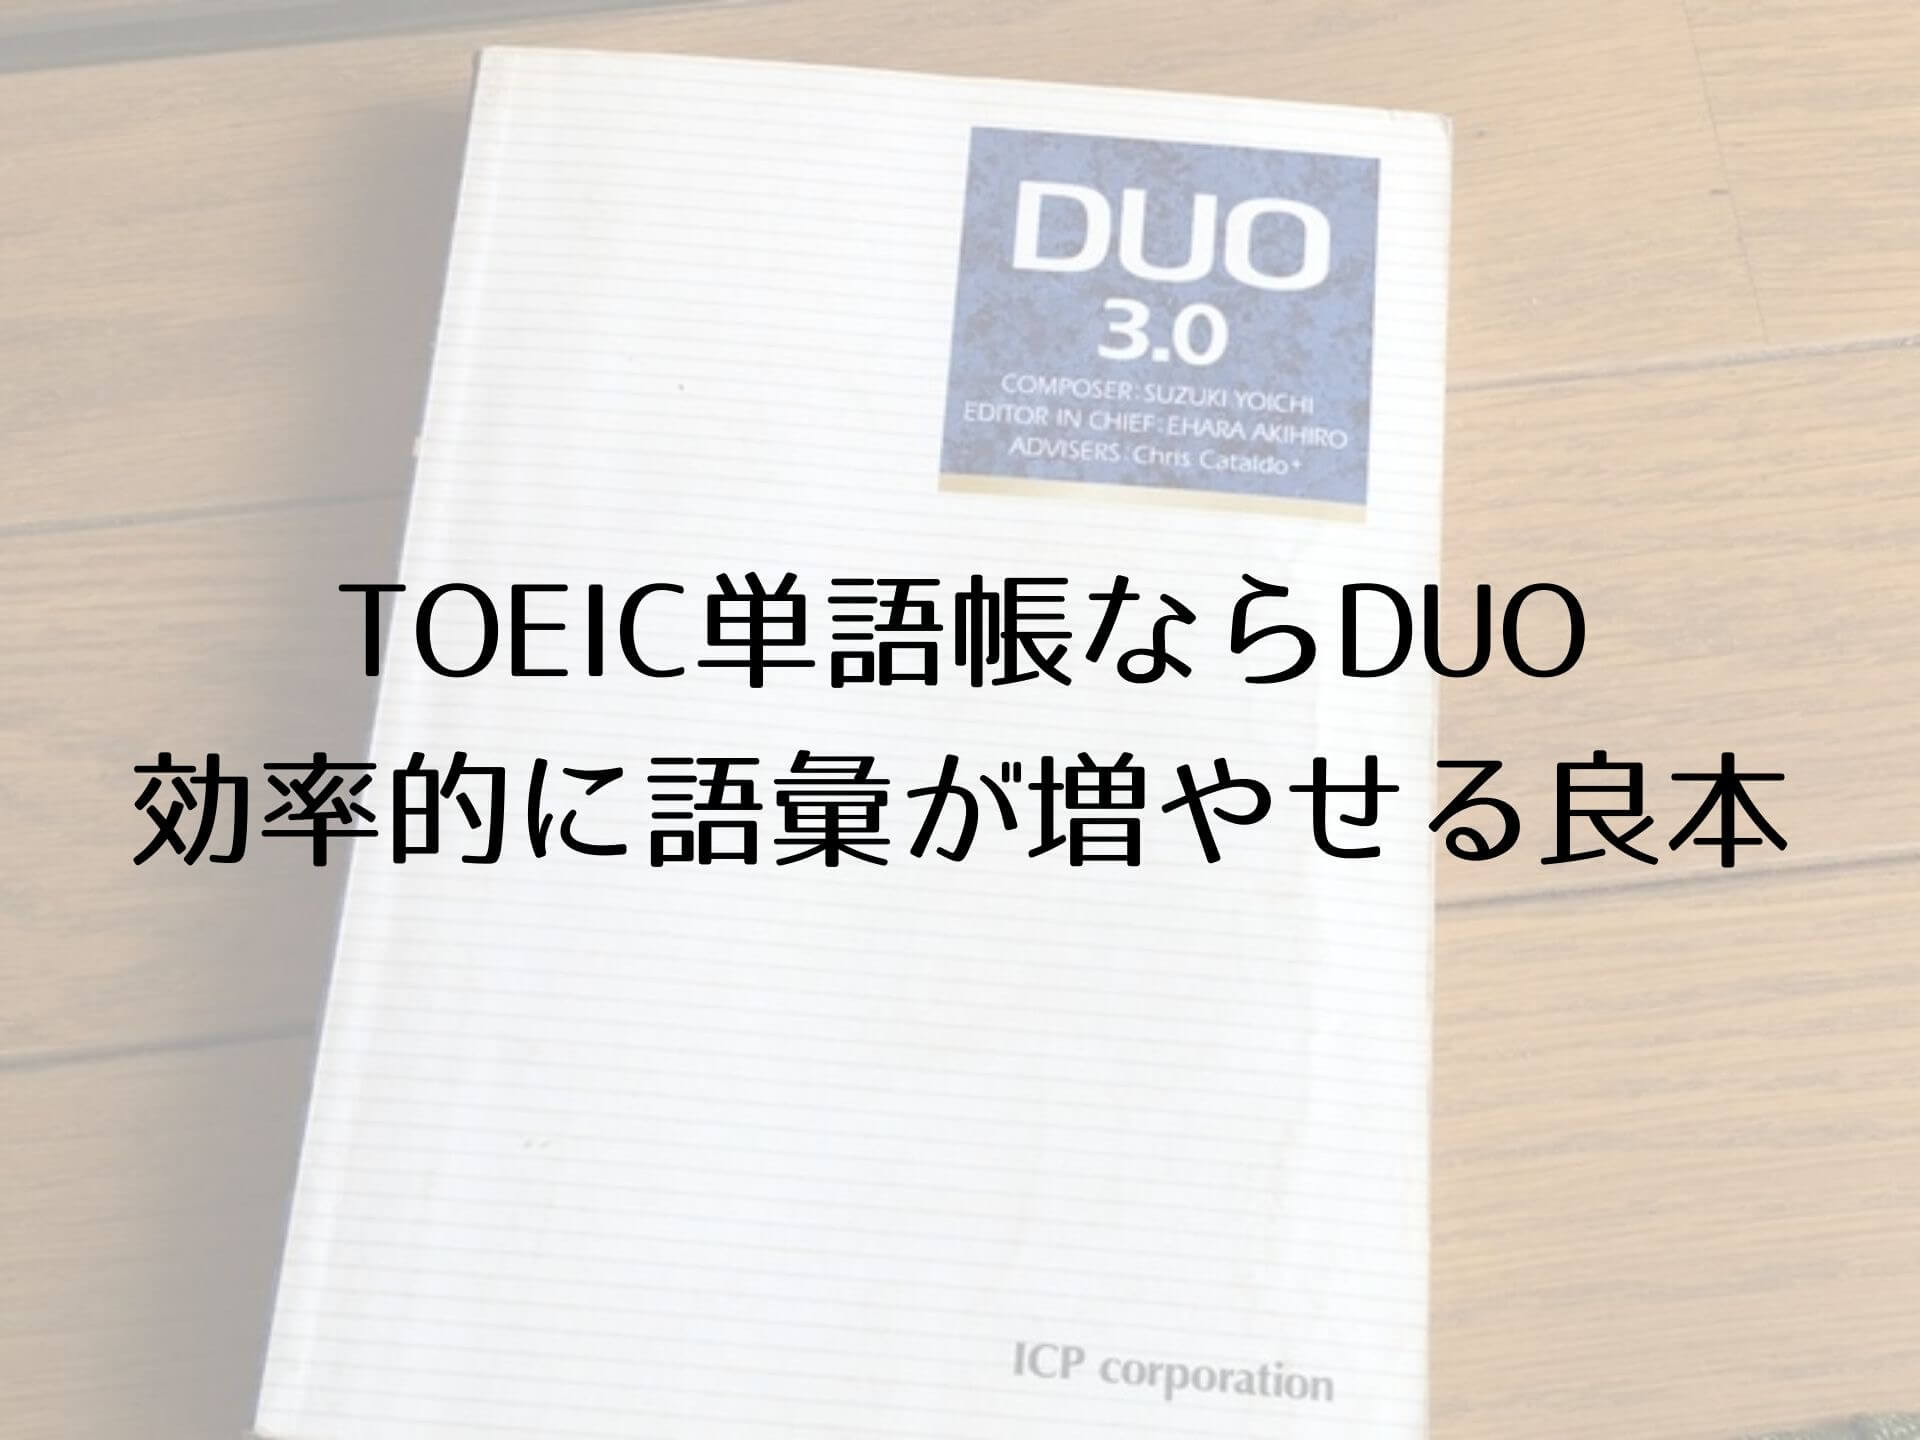 Toeic単語帳ならduoがおすすめ 効率的に語彙が増やせる良本 はたのブログ